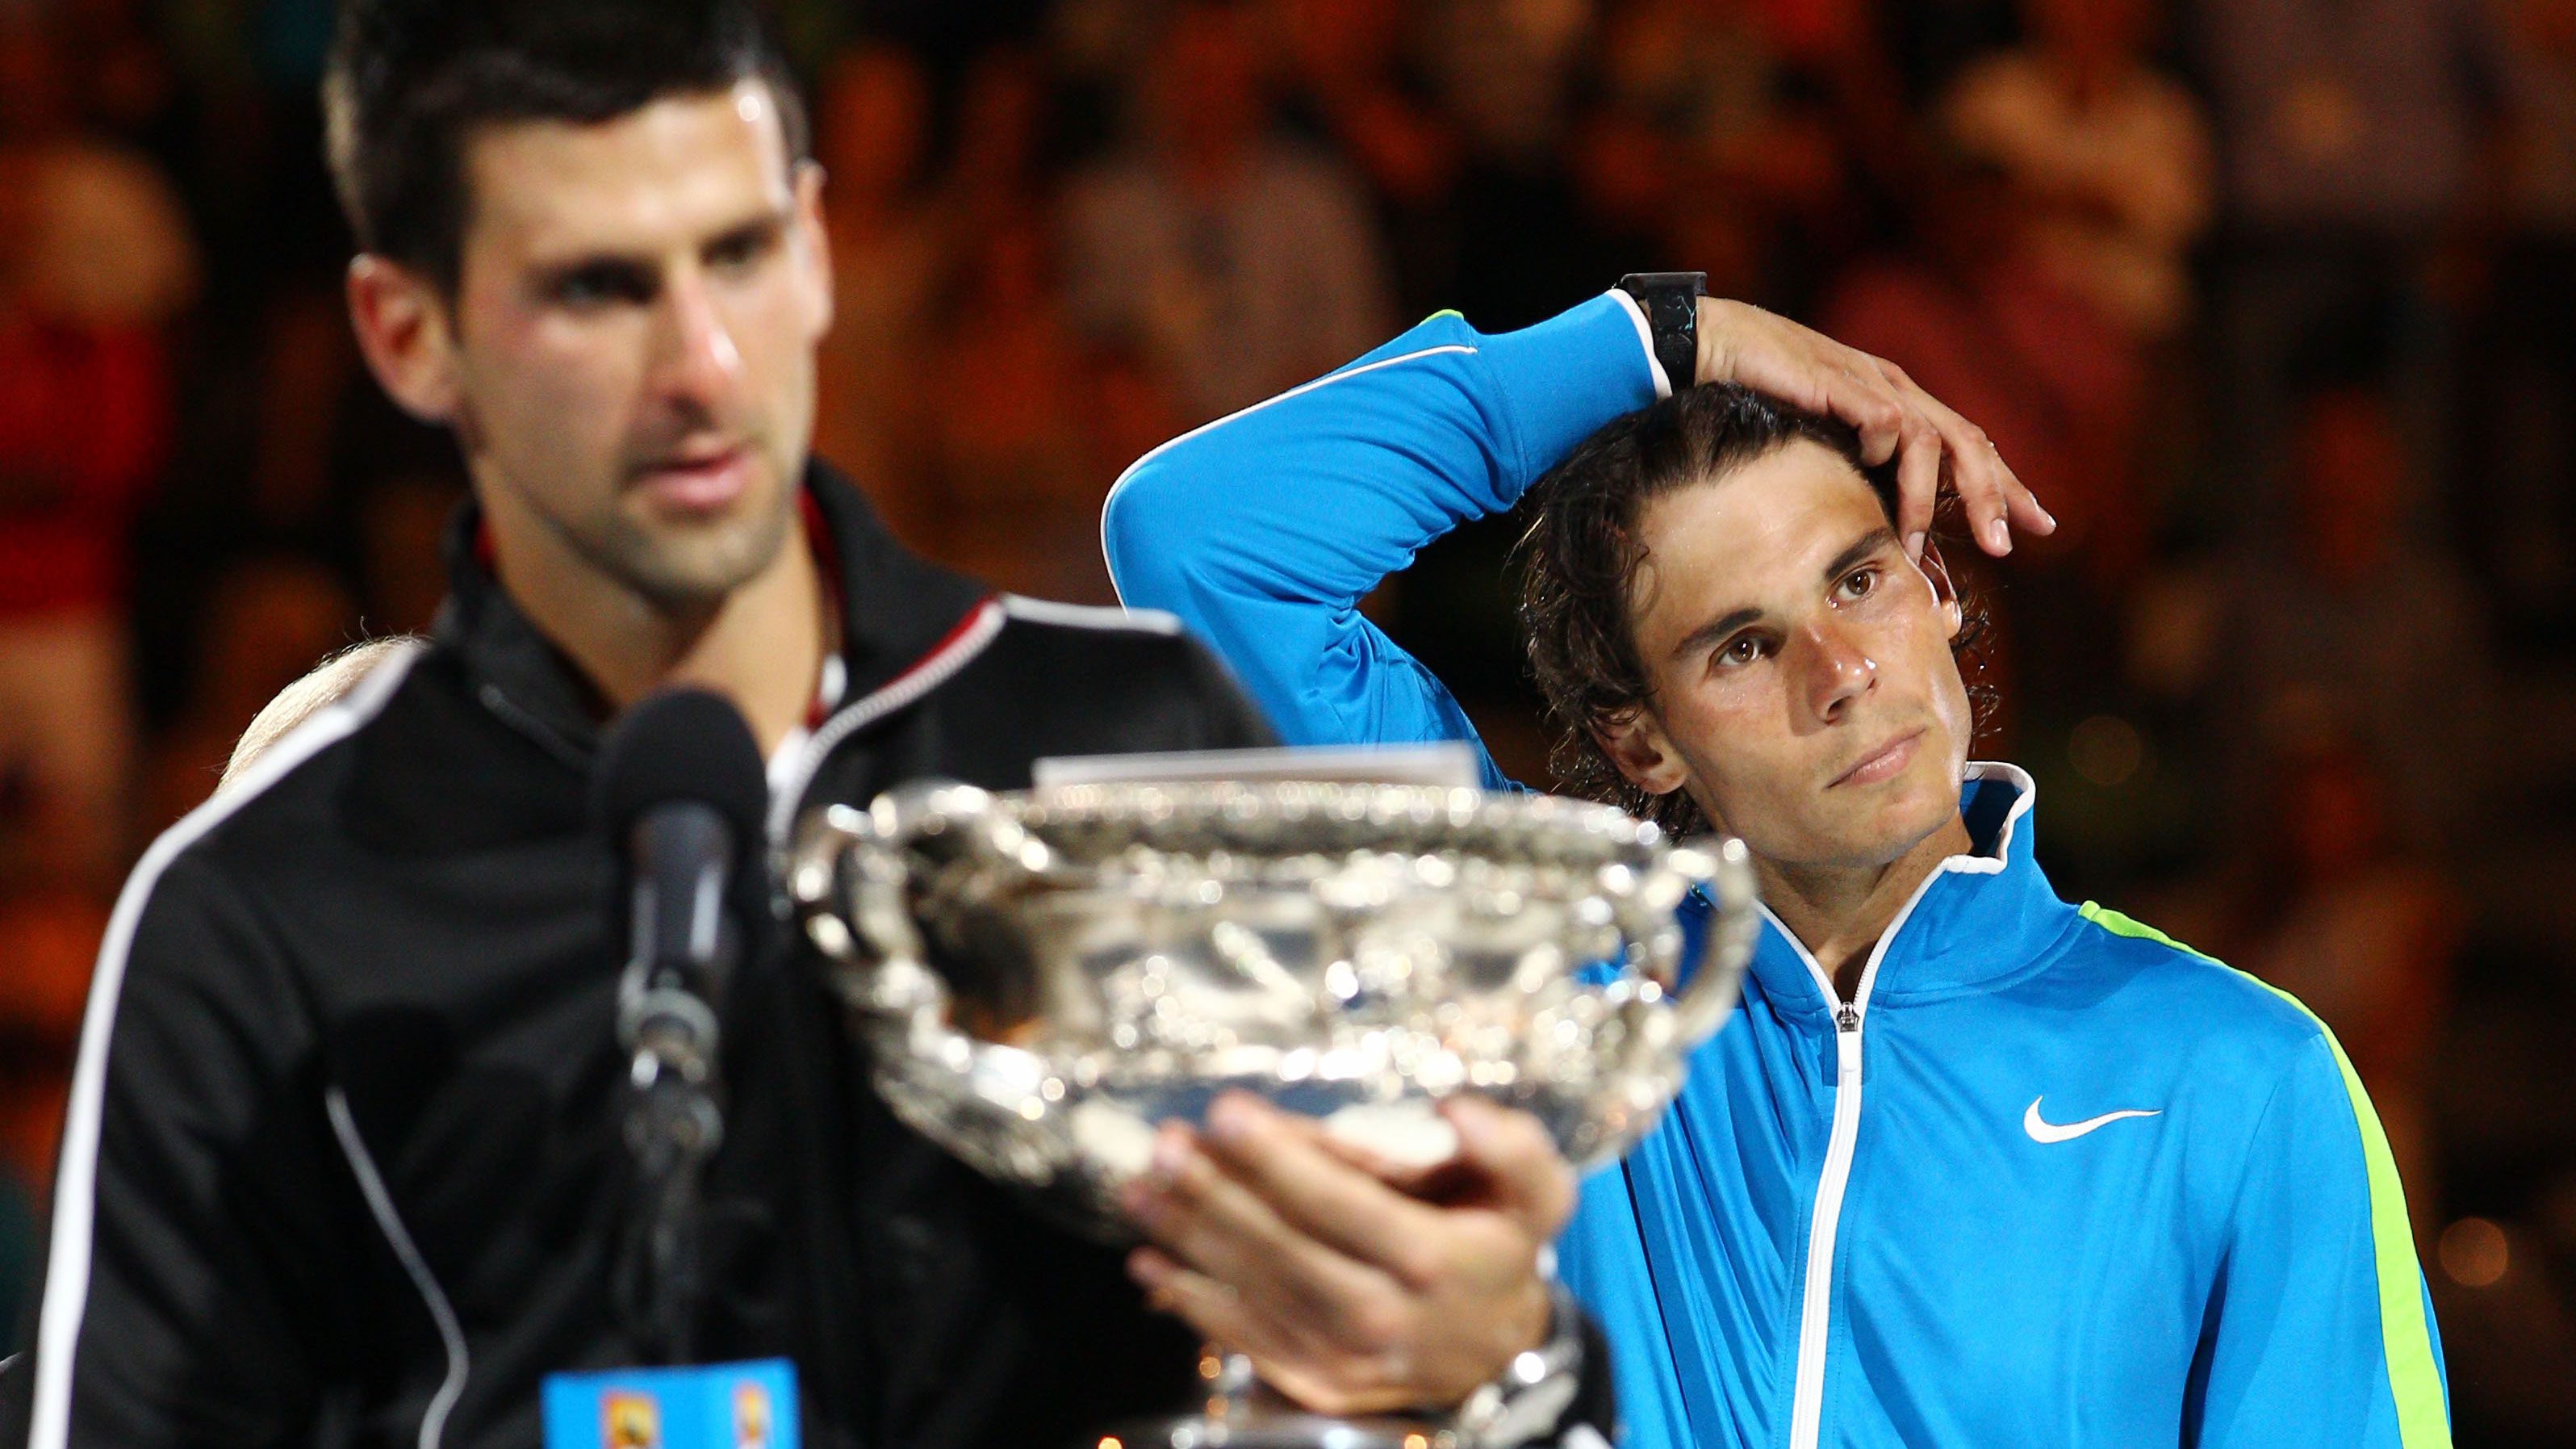 True feelings of Rafael Nadal following 2012 Australian Open final revealed